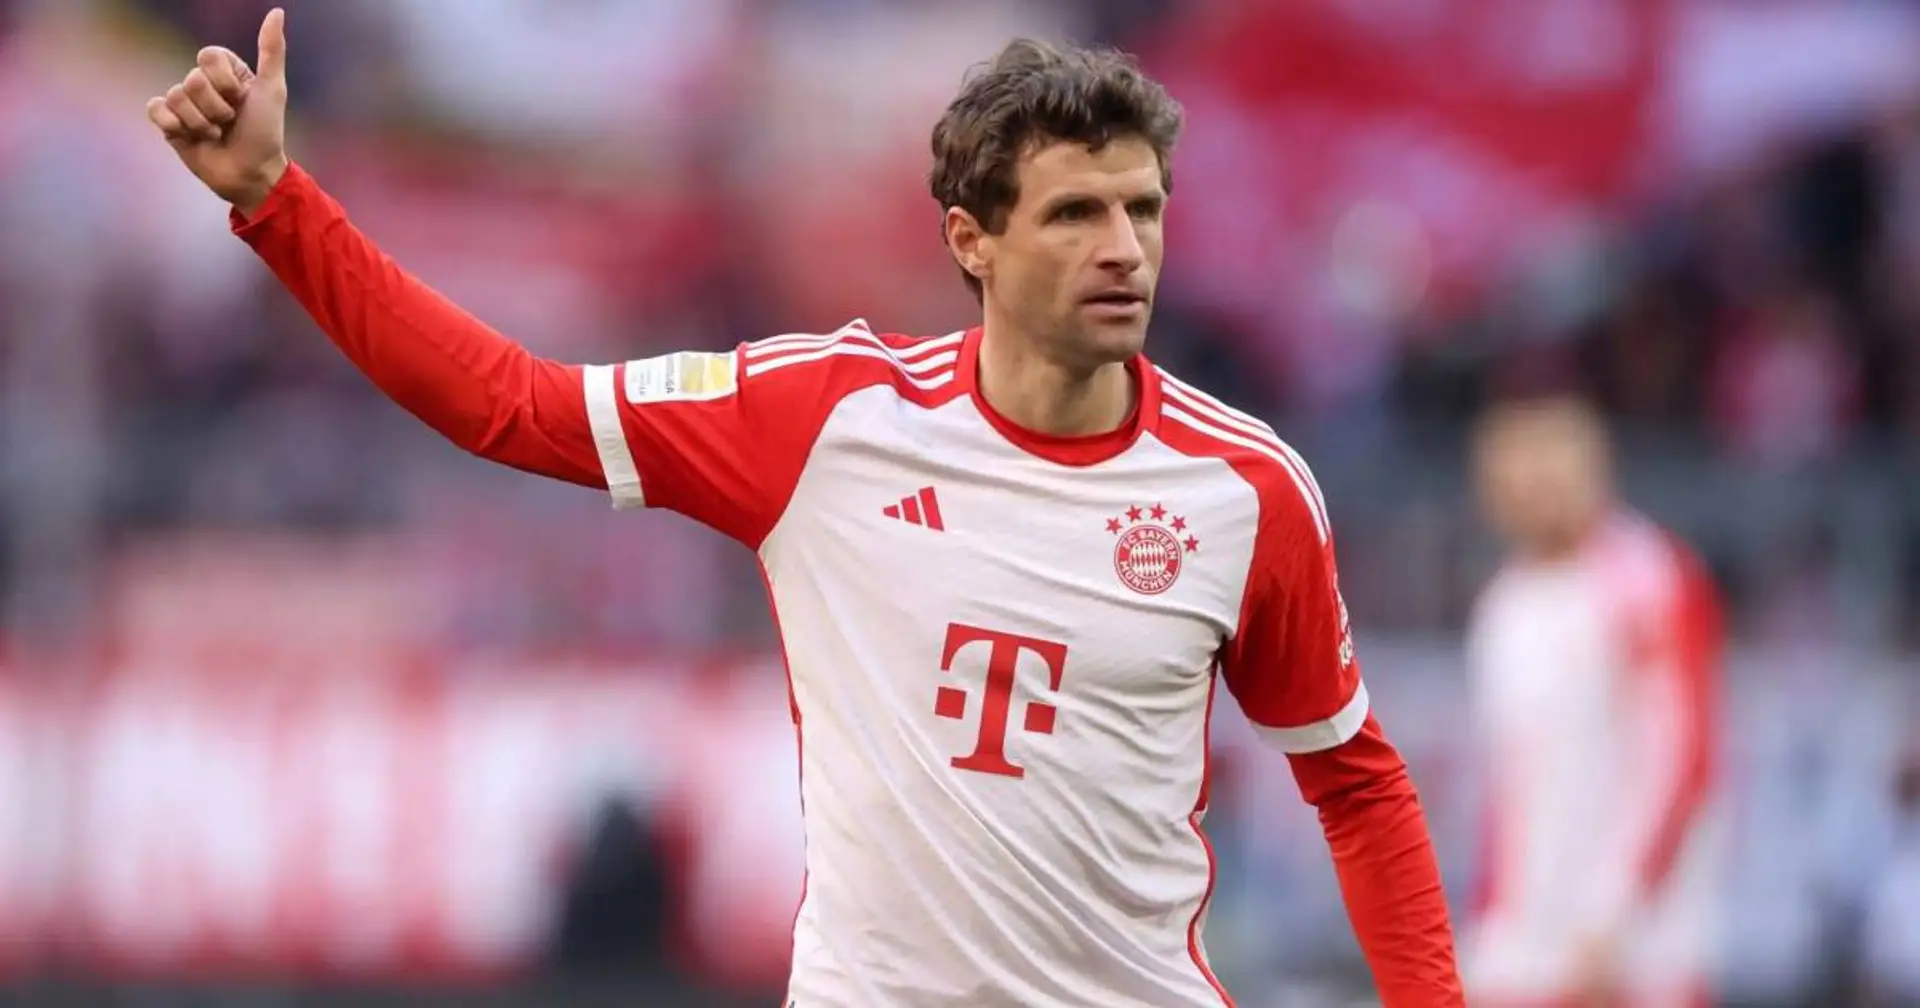 Müller kann heute zum dritten Spieler werden, der 150 UCL-Partien für einen Verein bestreitet